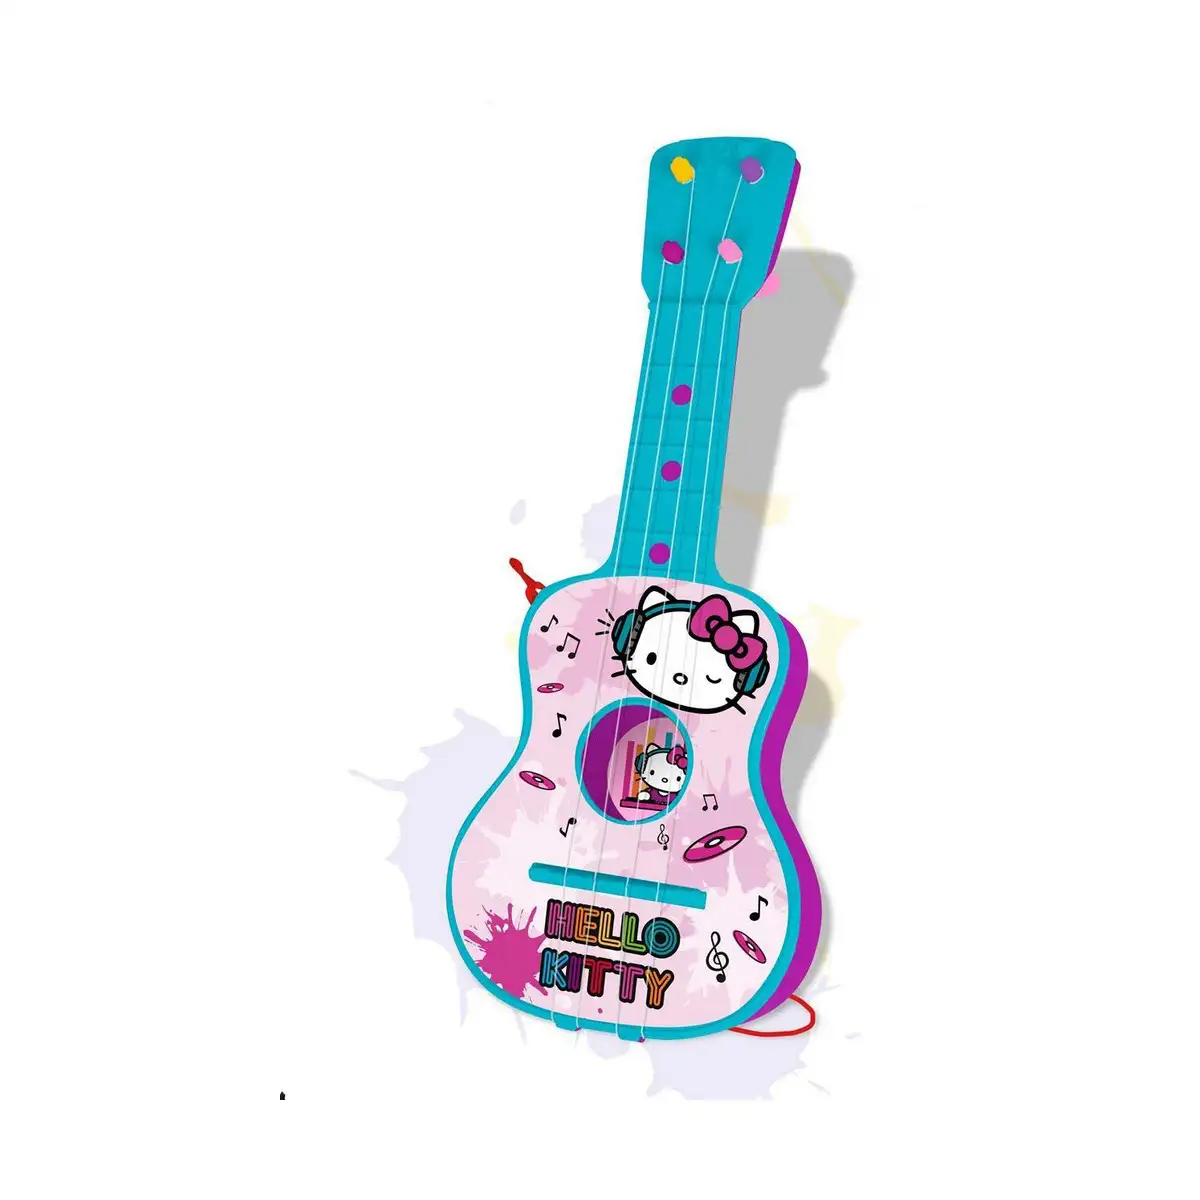 Guitare pour enfant hello kitty bleu rose 4 cordes_6194. DIAYTAR SENEGAL - Là où Chaque Achat a du Sens. Explorez notre gamme et choisissez des produits qui racontent une histoire, du traditionnel au contemporain.